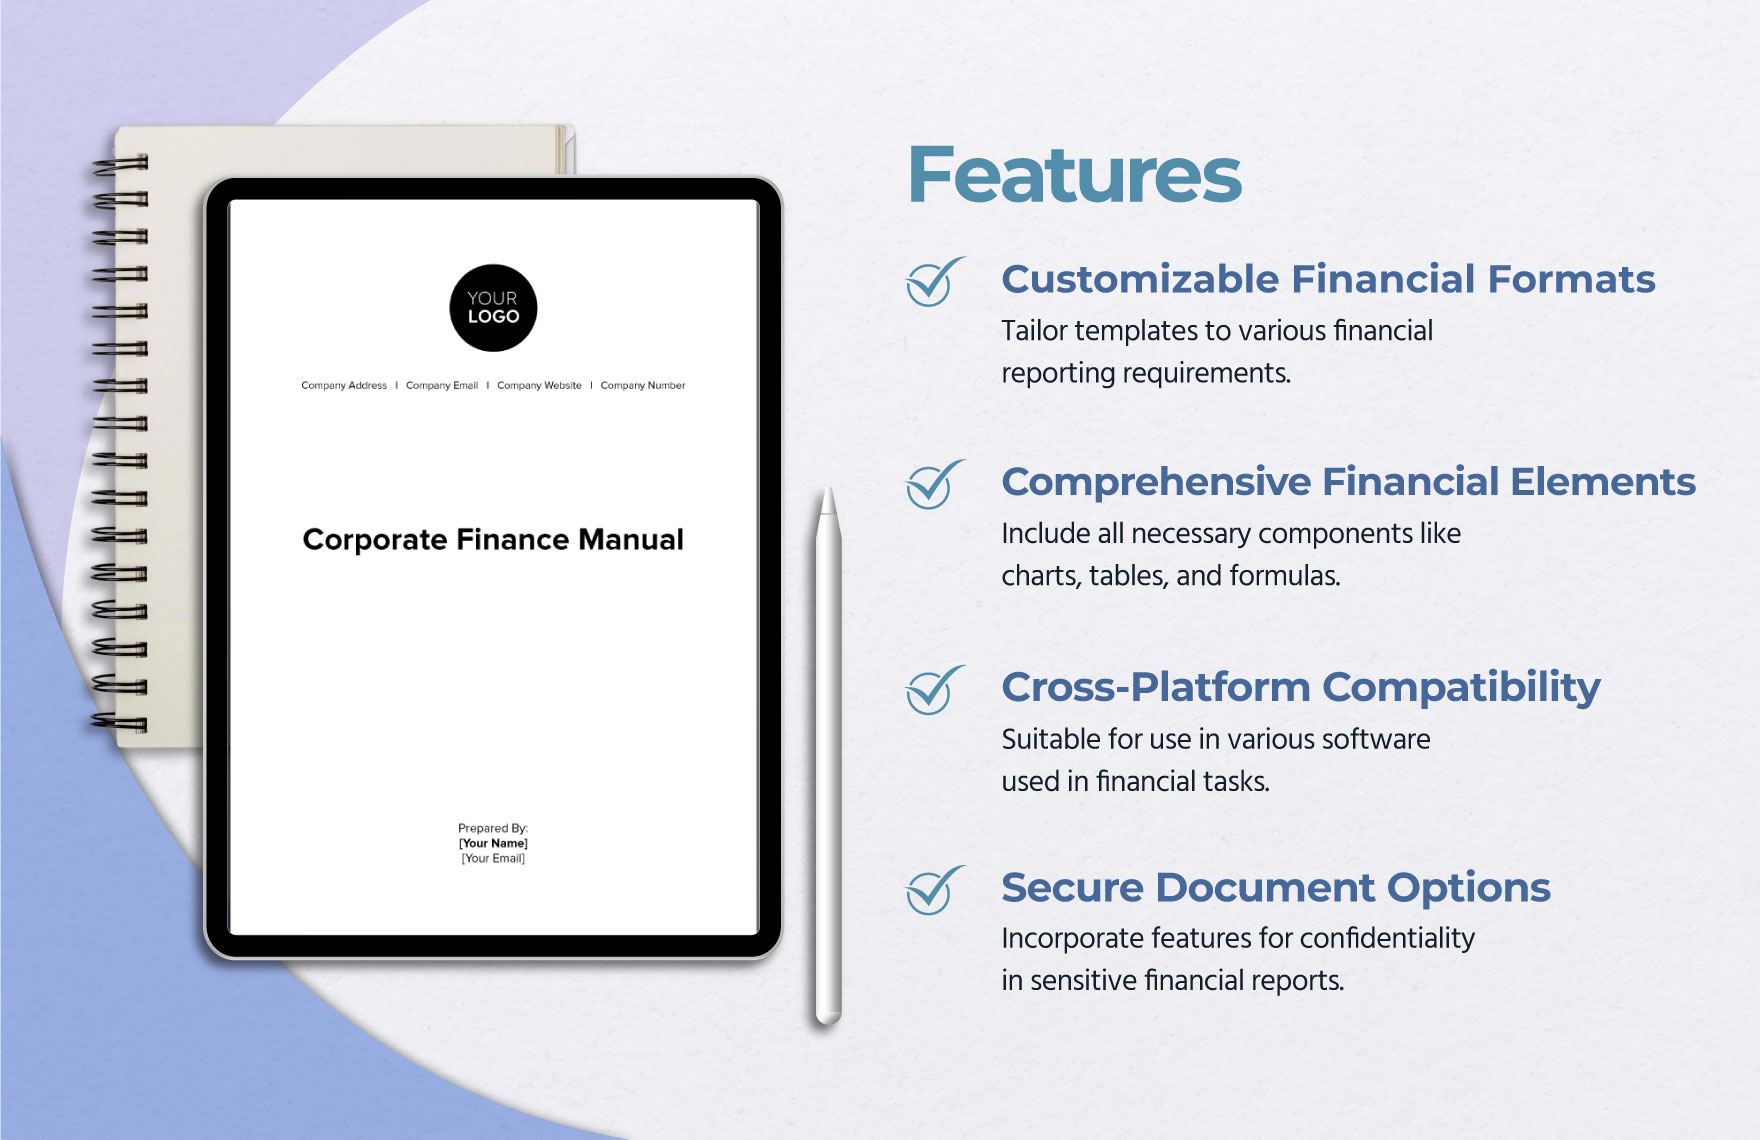 Corporate Finance Manual Template